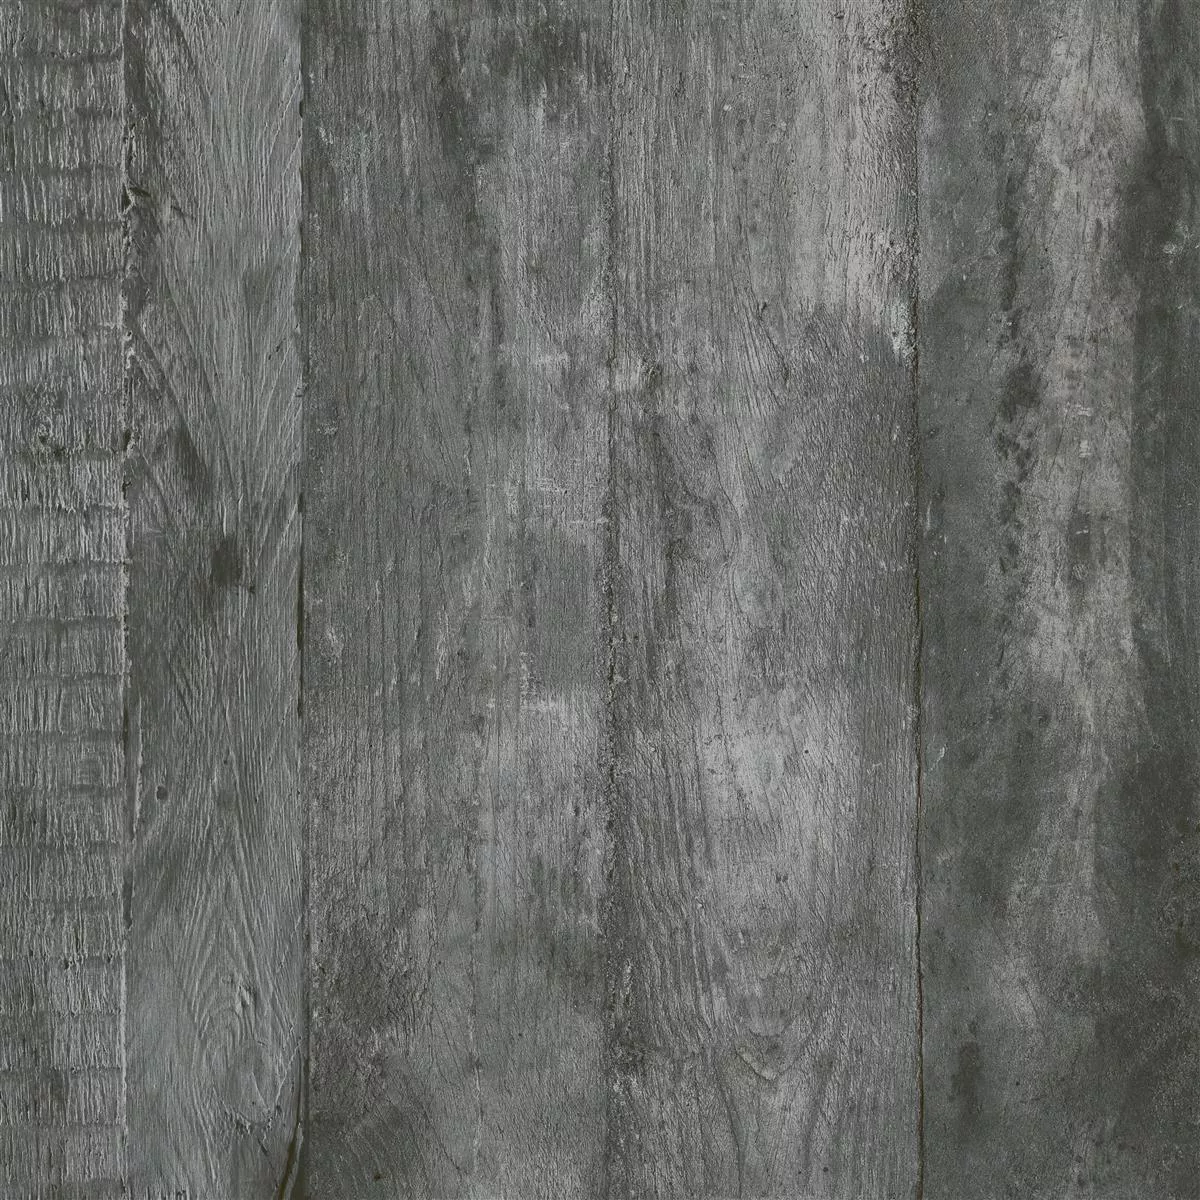 Sample Floor Tiles Gorki Wood Optic 60x60cm Glazed Graphit